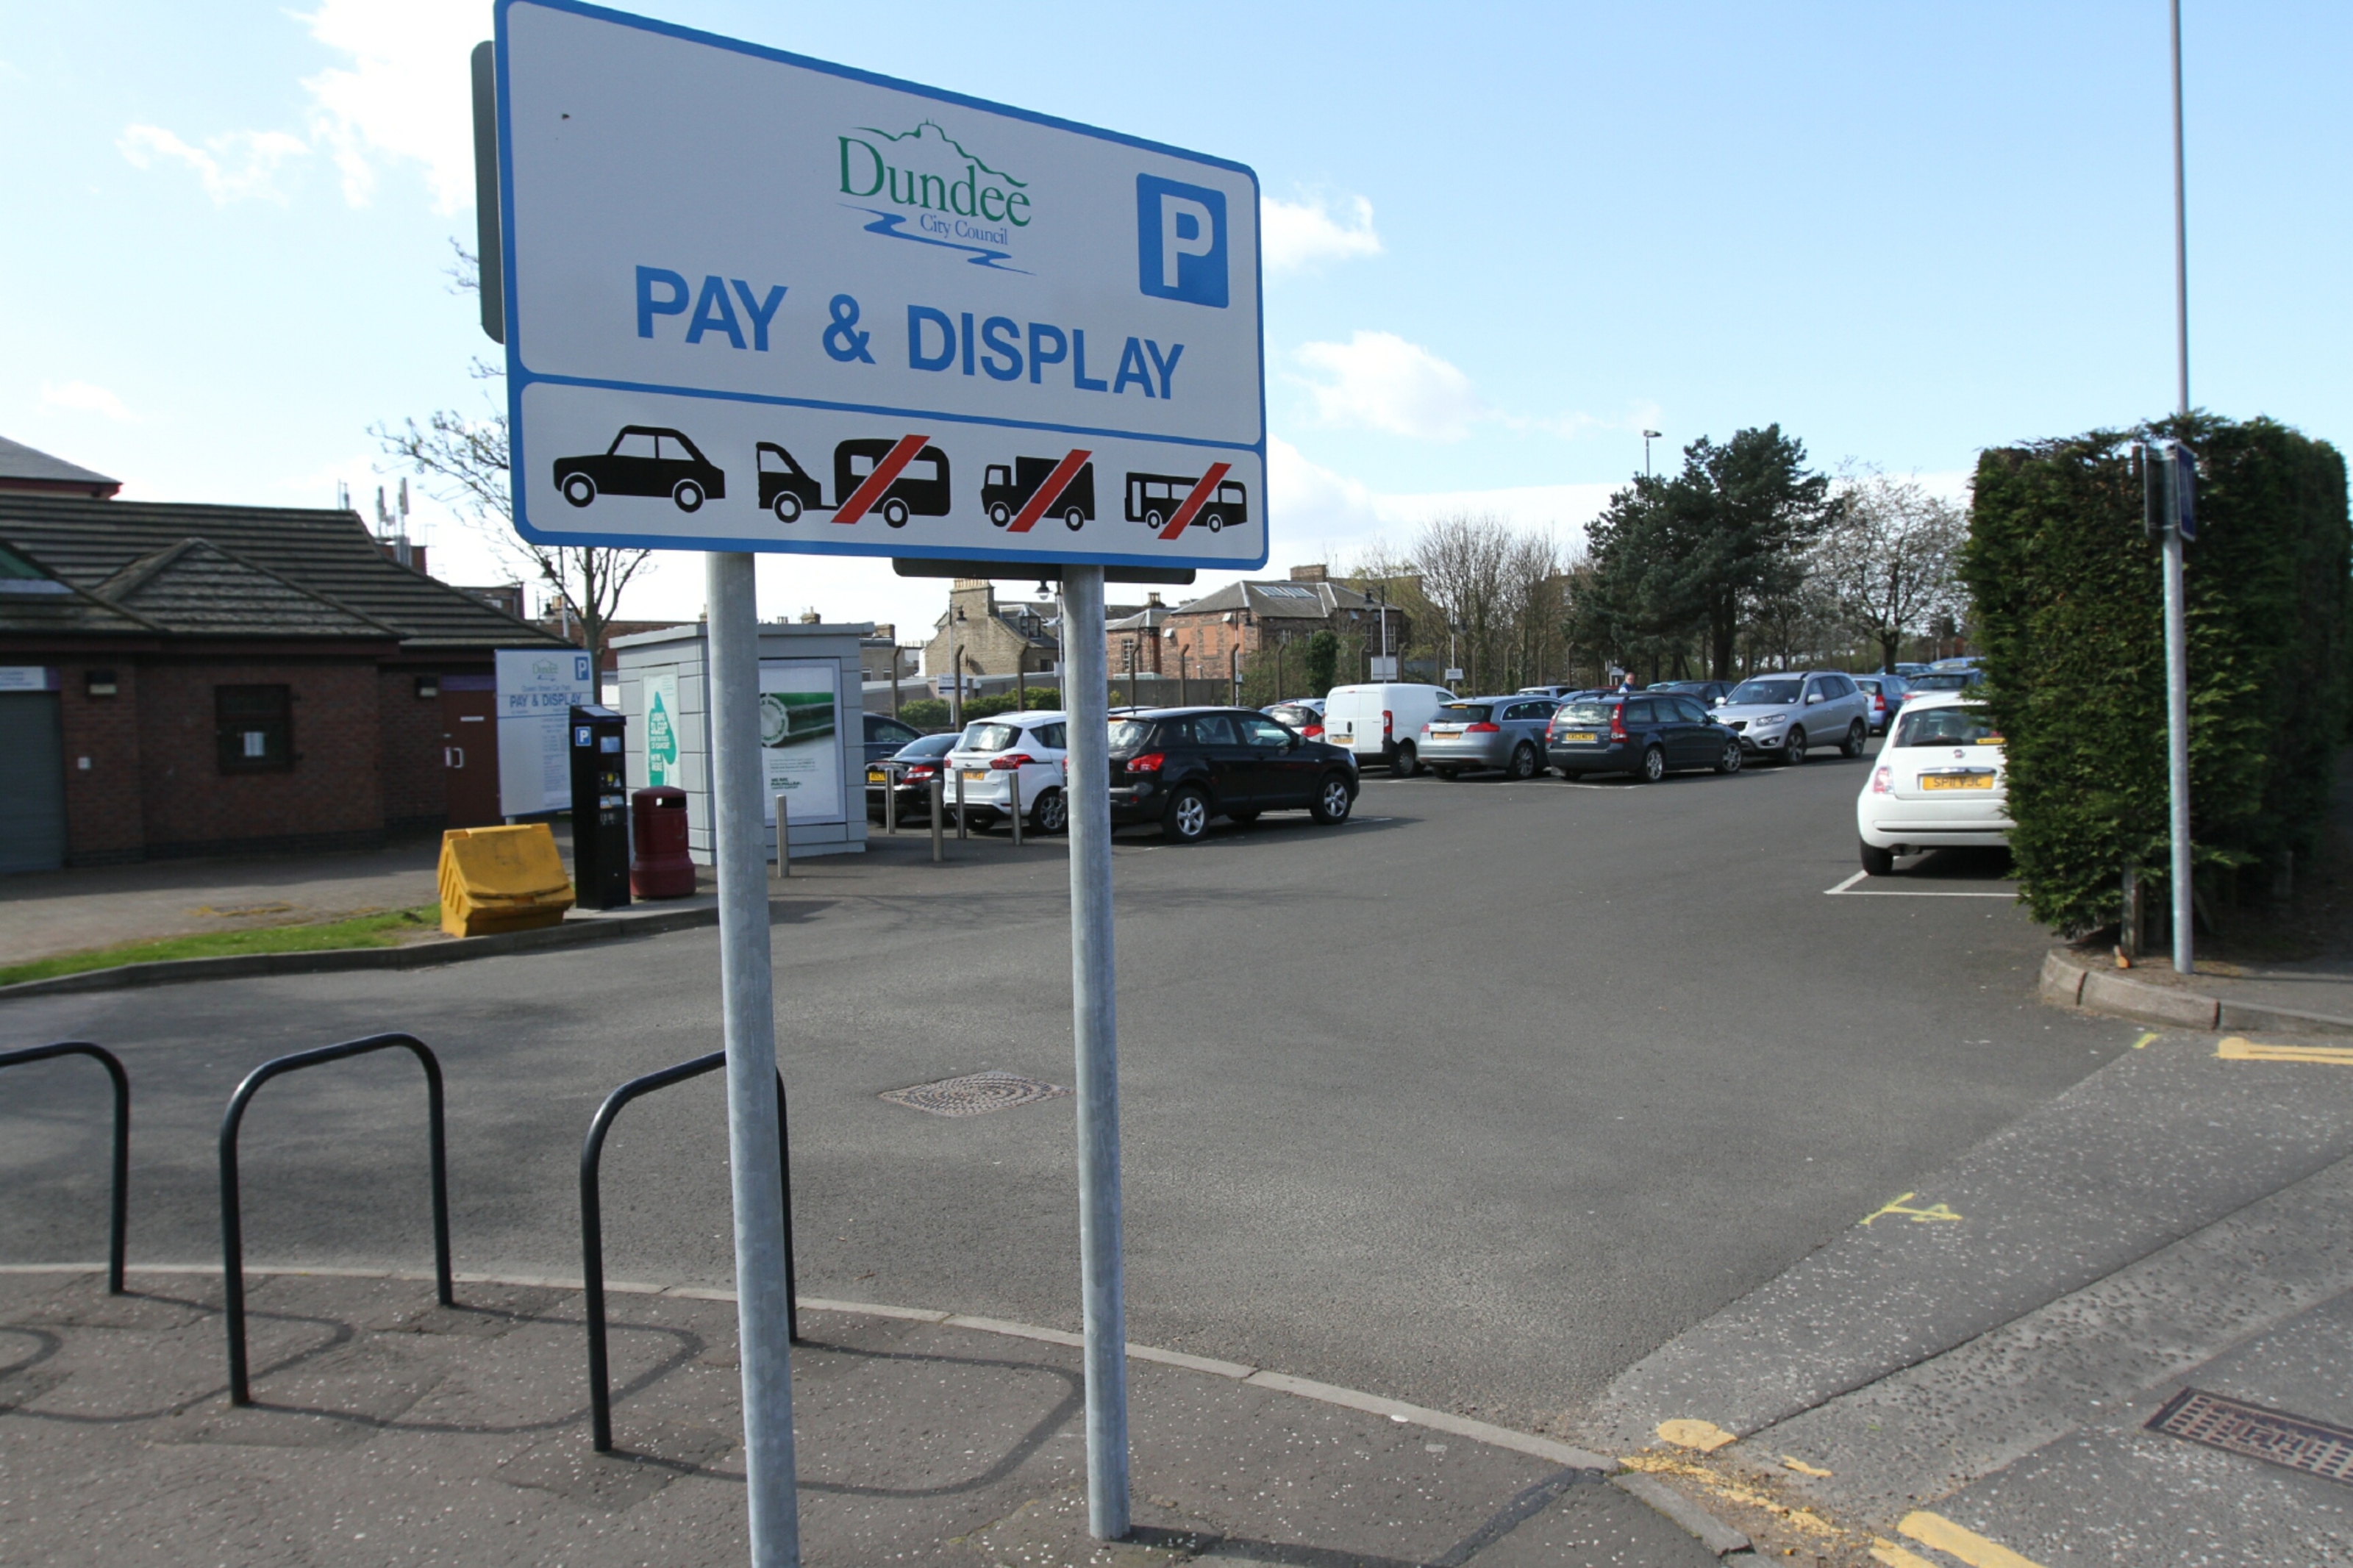 Queen Street car park in Broughty Ferry